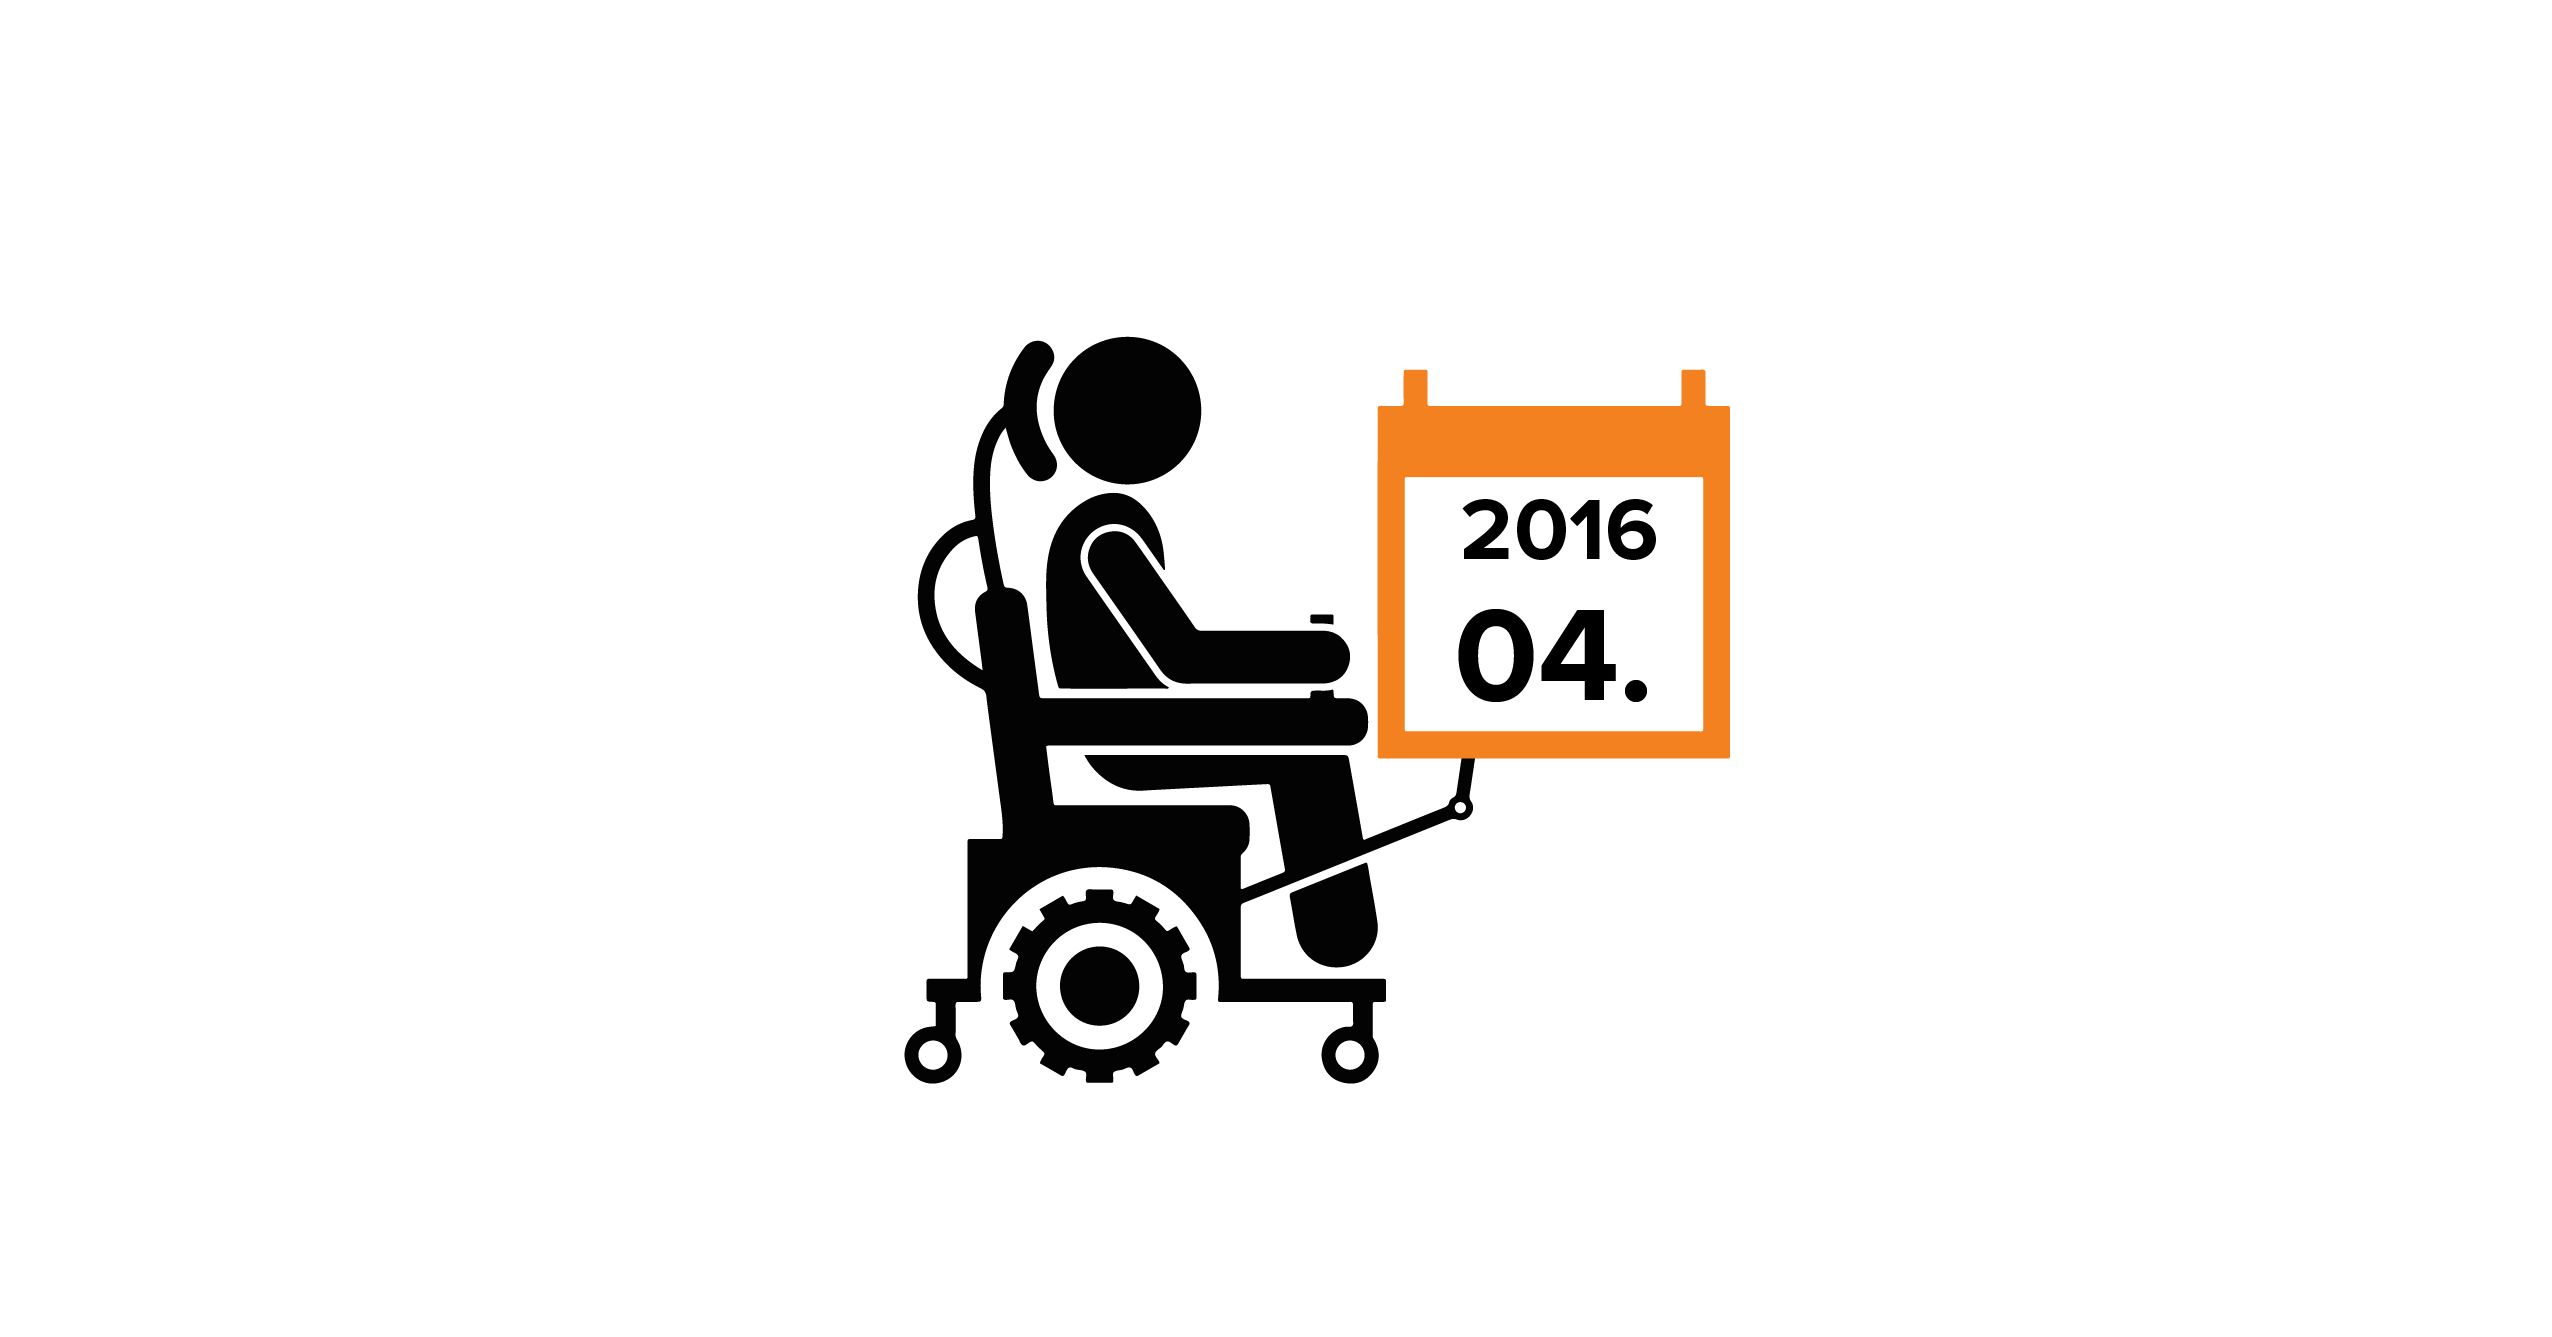 Na grafice człowiek na wózku, trzymający kalendarz z datą 04.2016